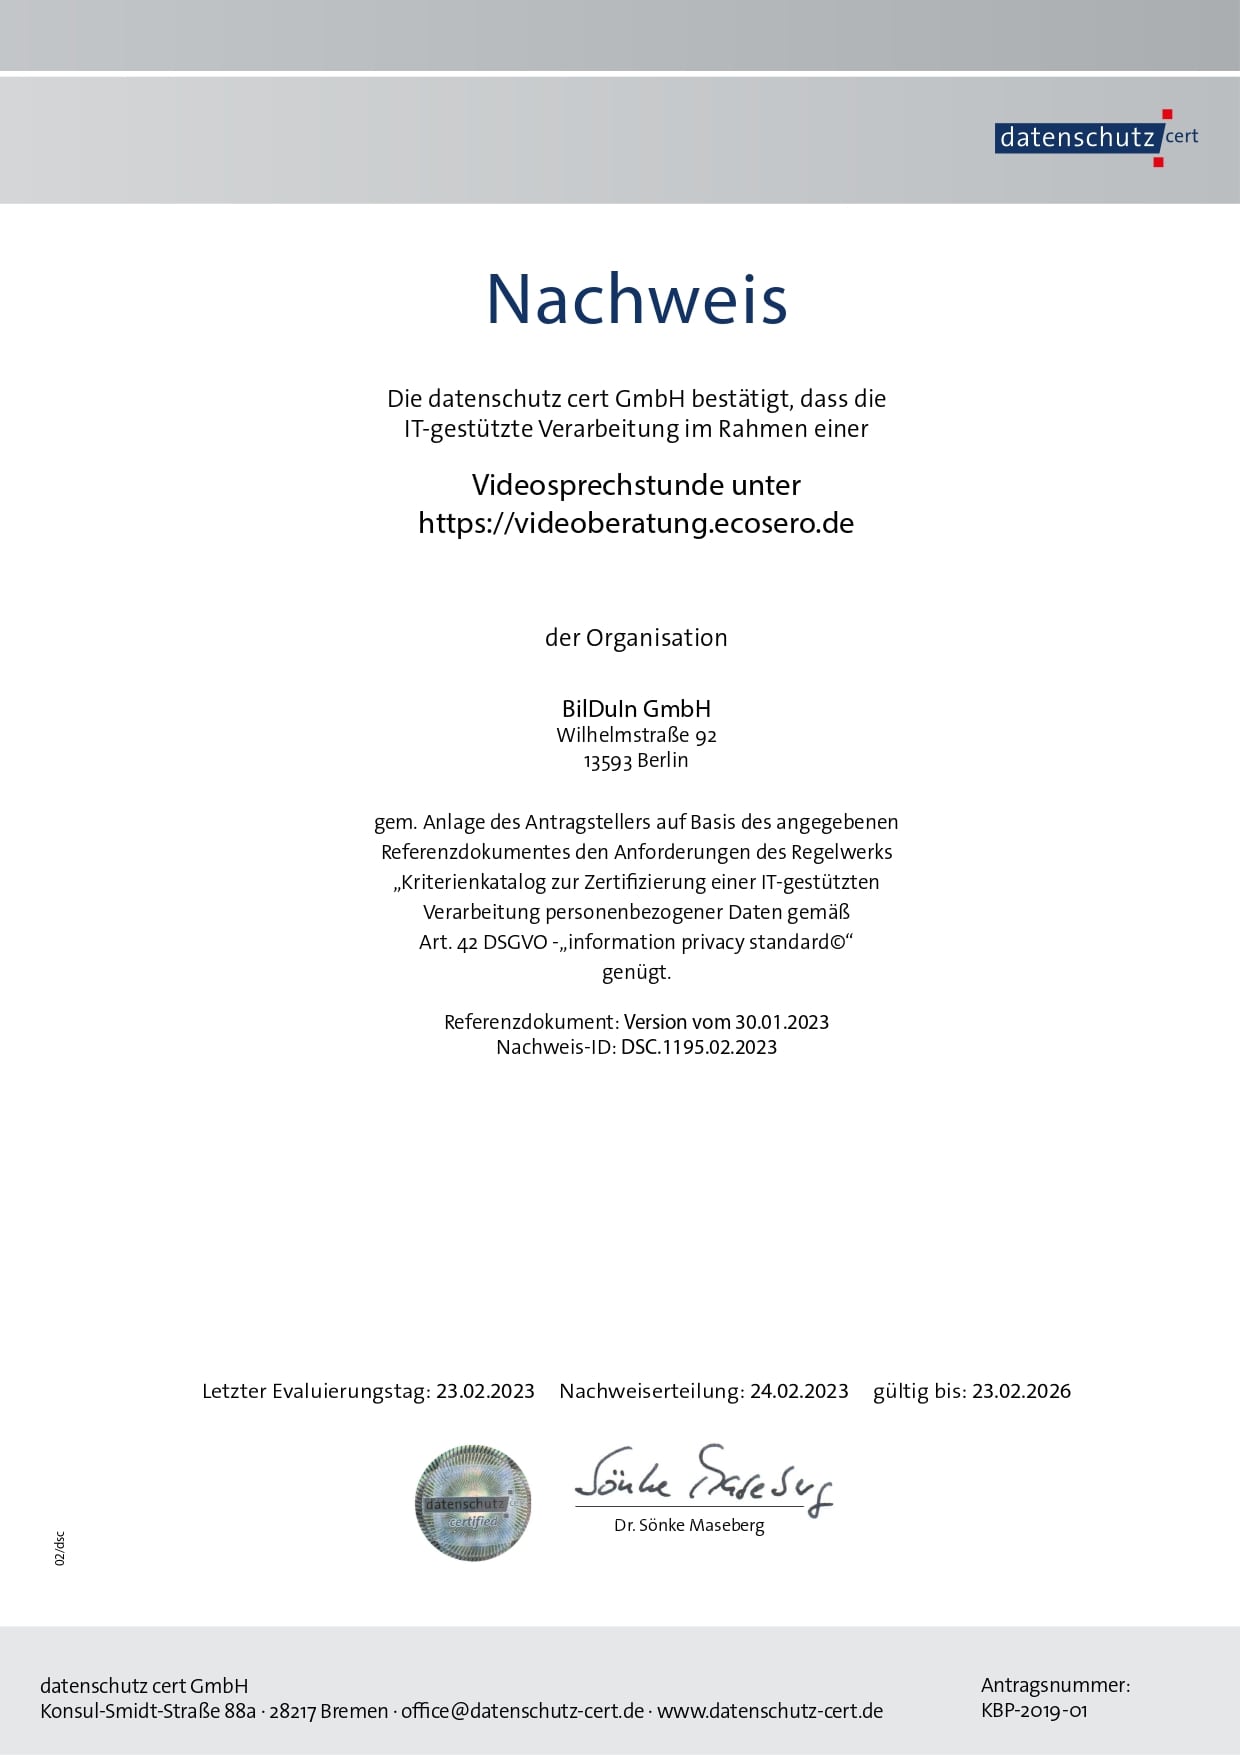 Verification DSGVO datenschutz cert GmbH